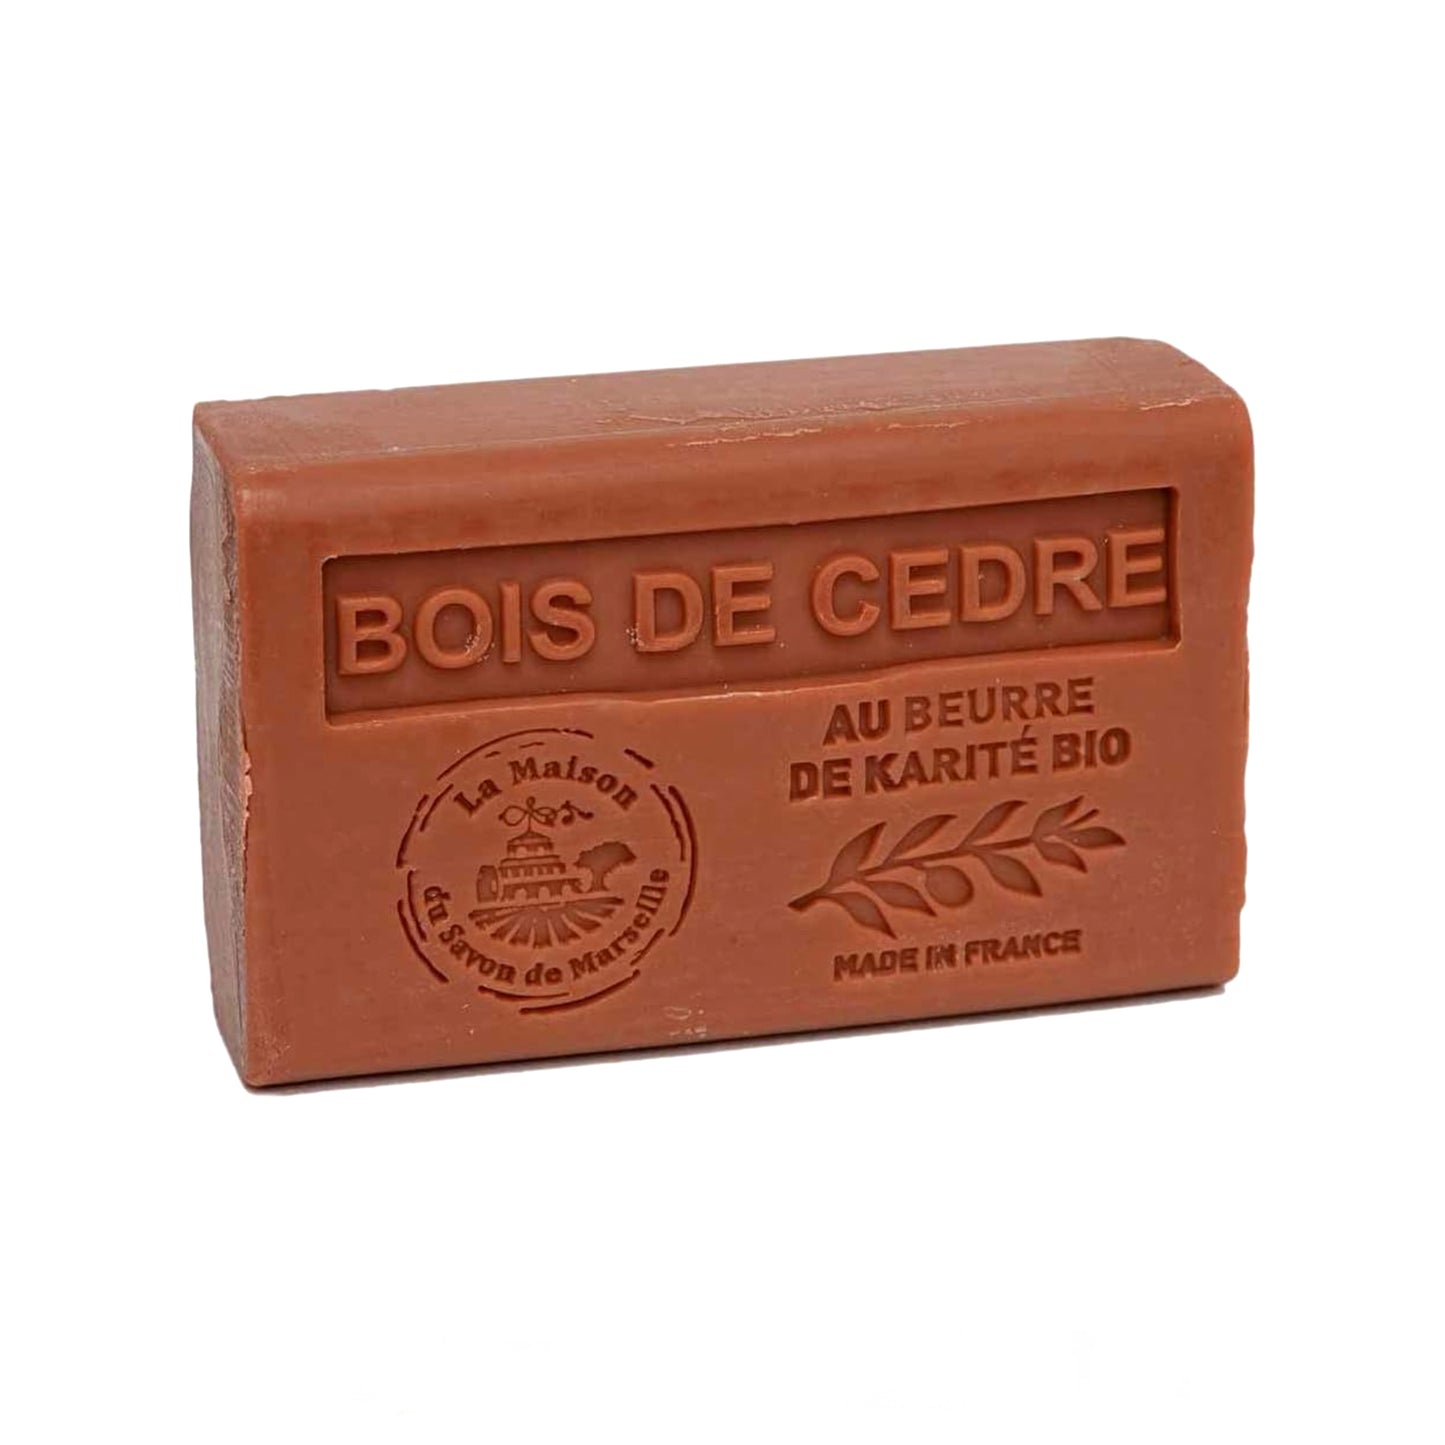 Savon de Marseille Bois de Cedre (Cedar Wood) soap